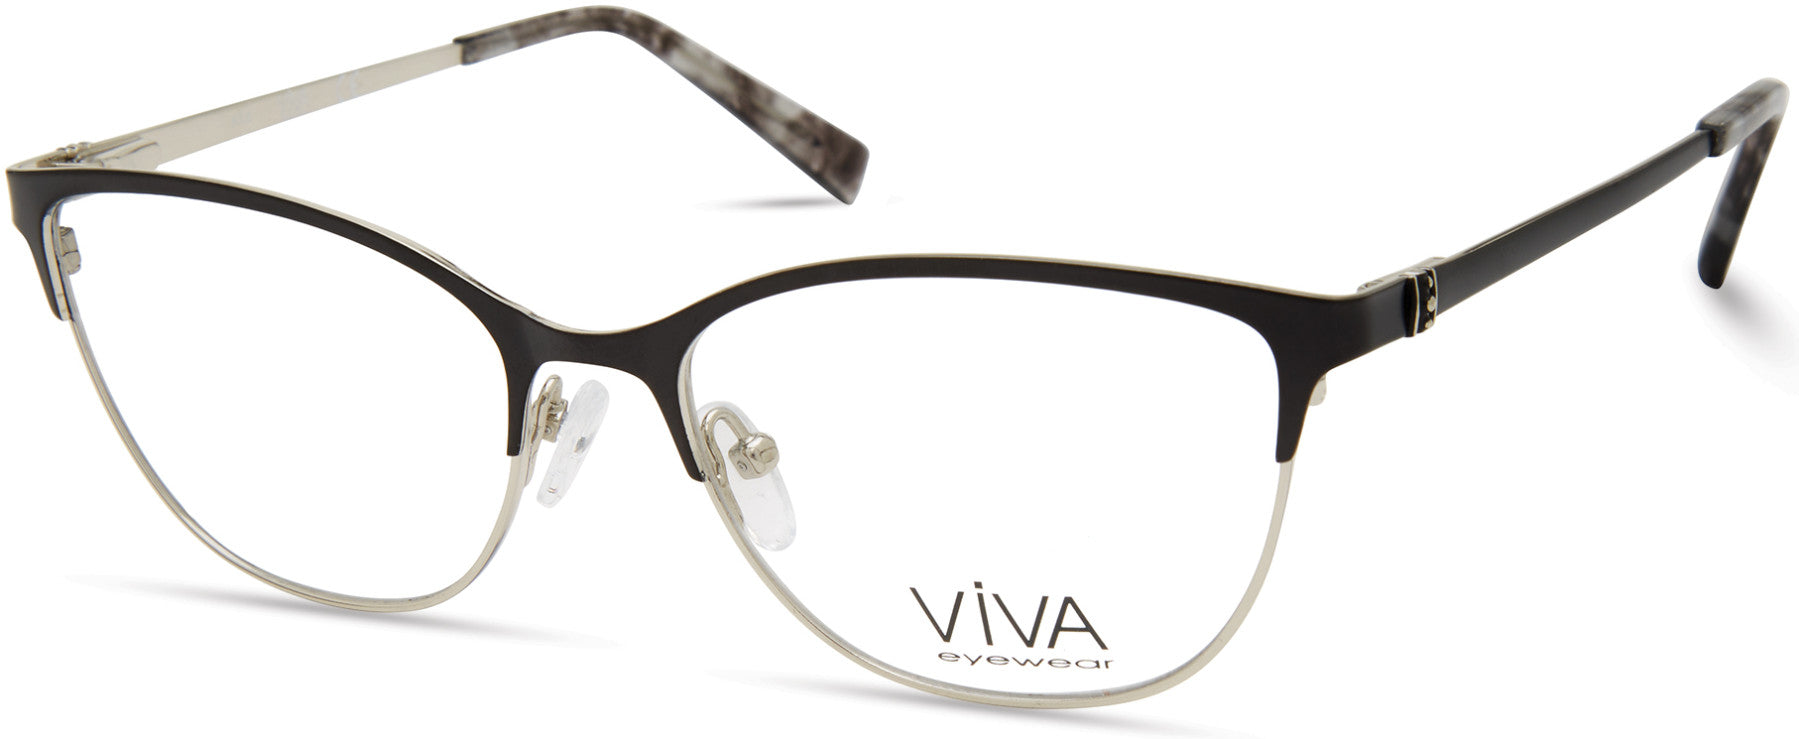 Viva VV4524 Square Eyeglasses 002-002 - Matte Black